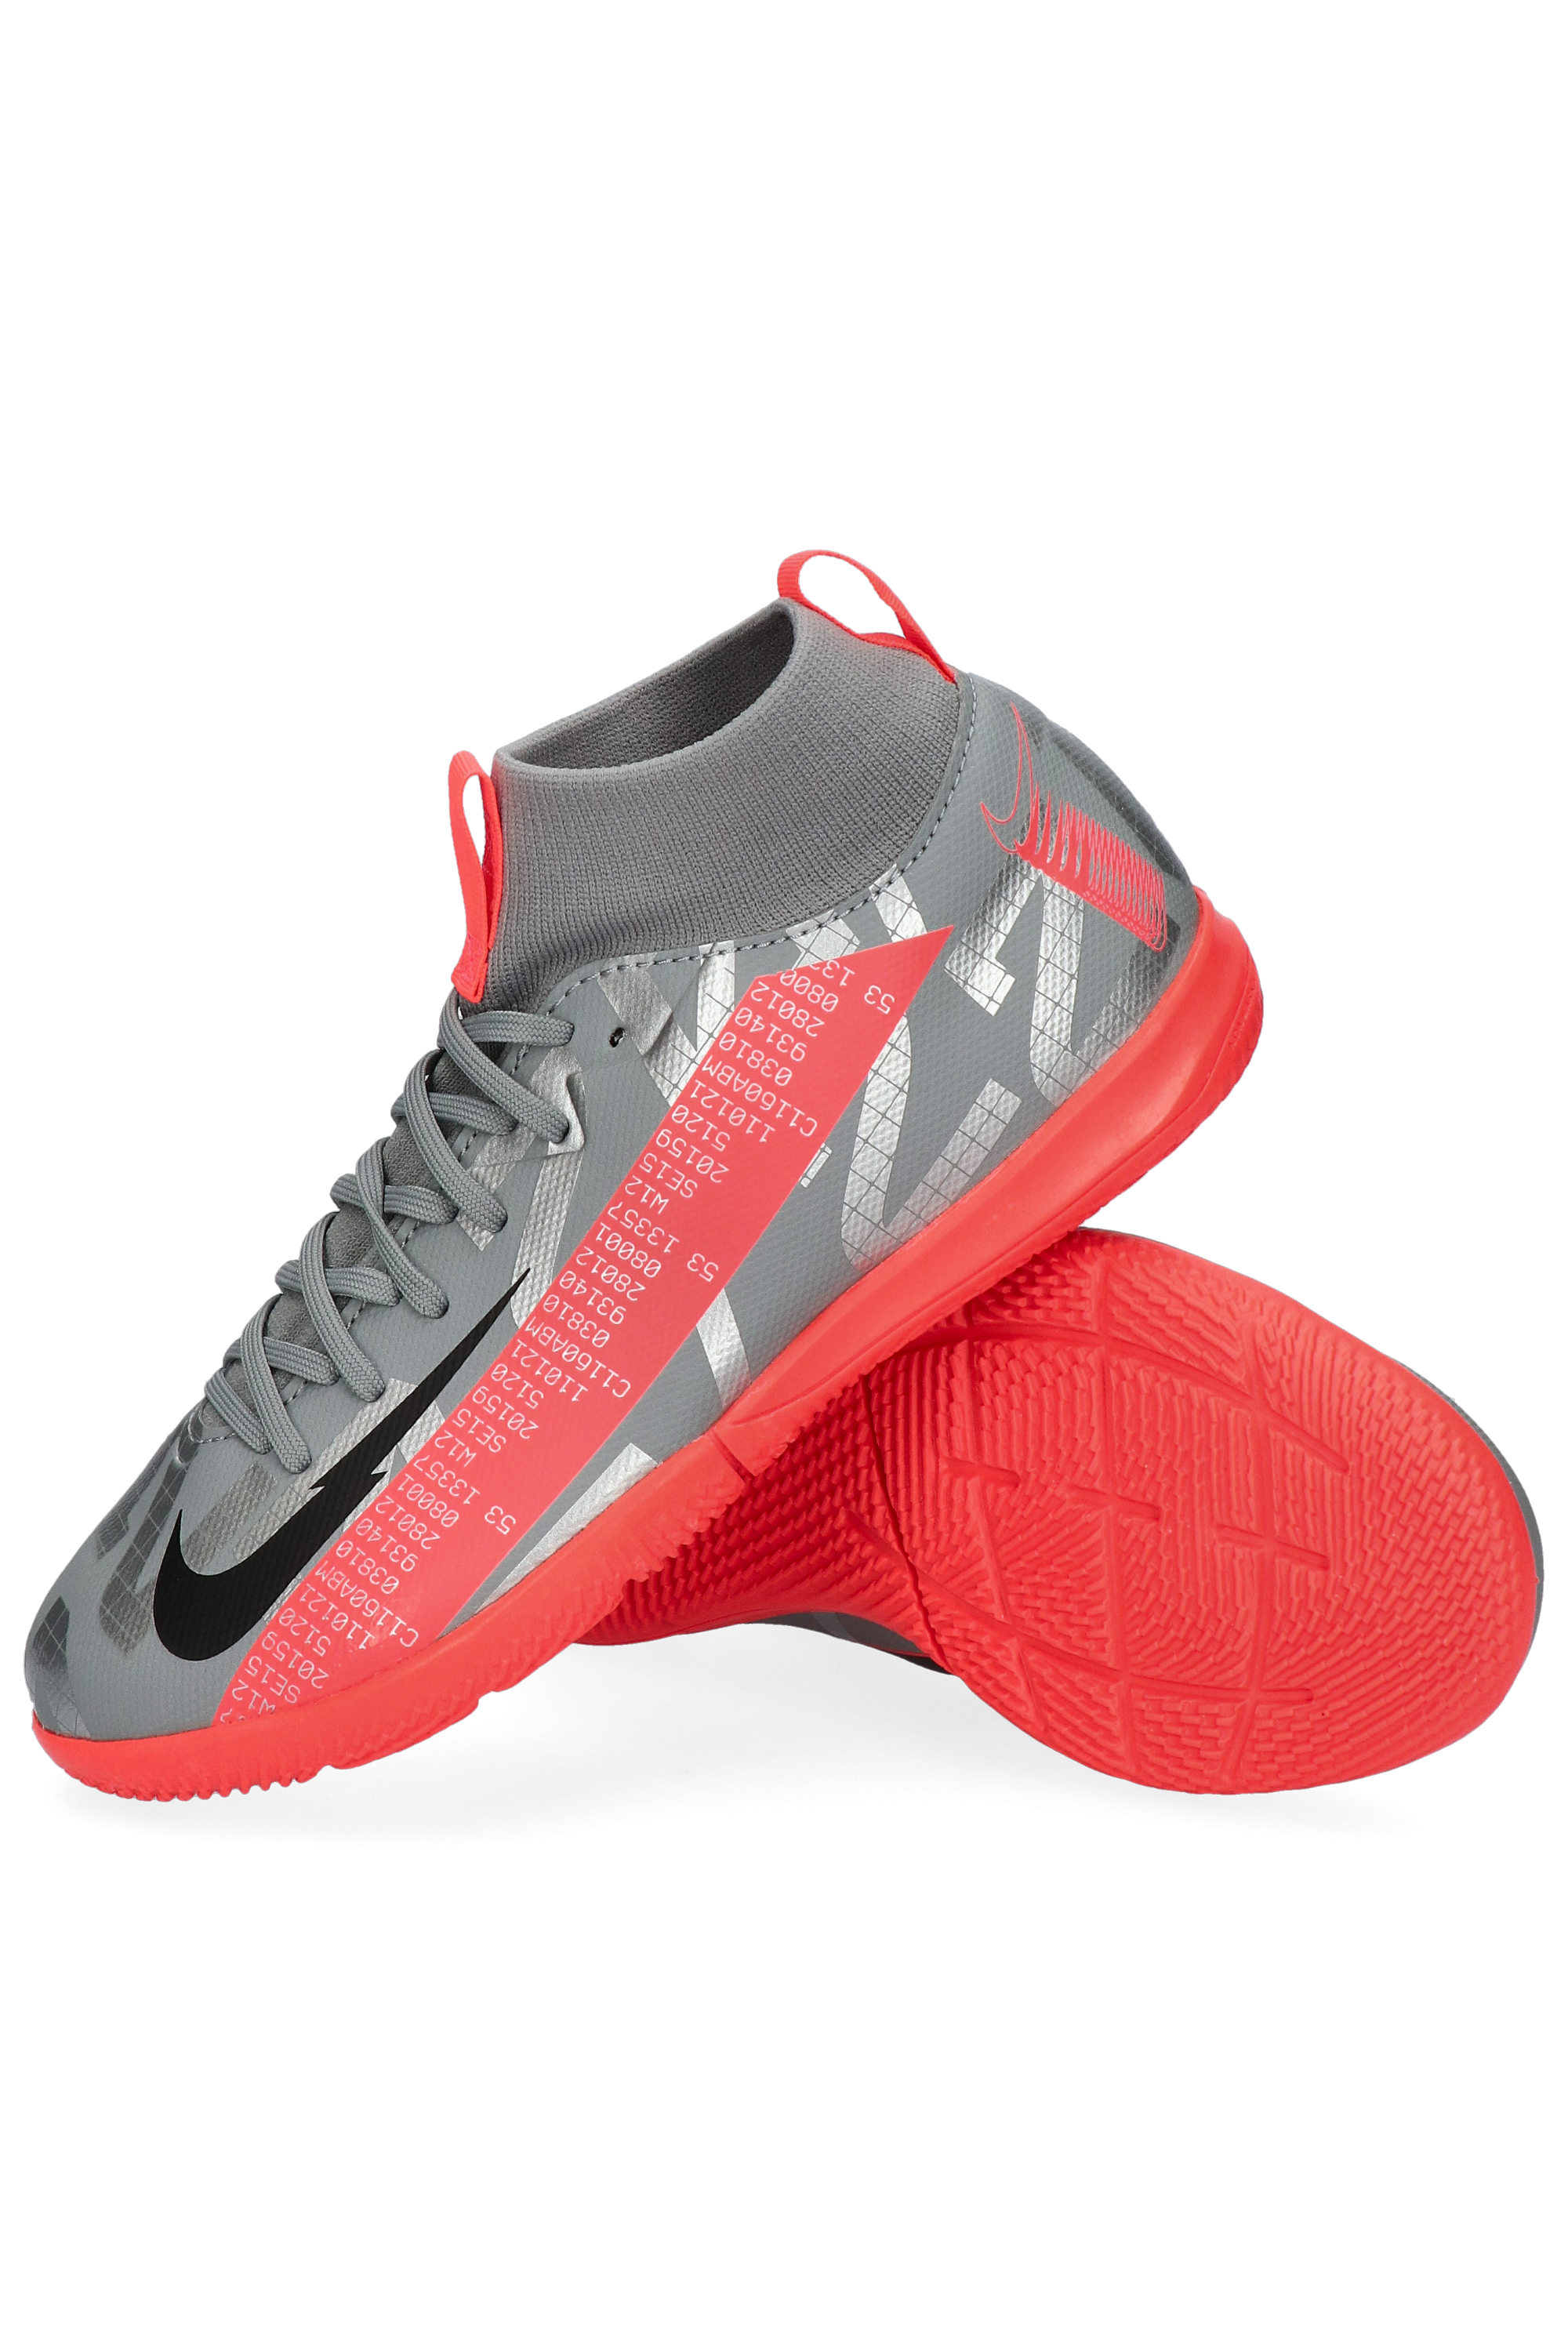 Nike Mercurial Superfly 6 Academy CR7 FG Football Boots.